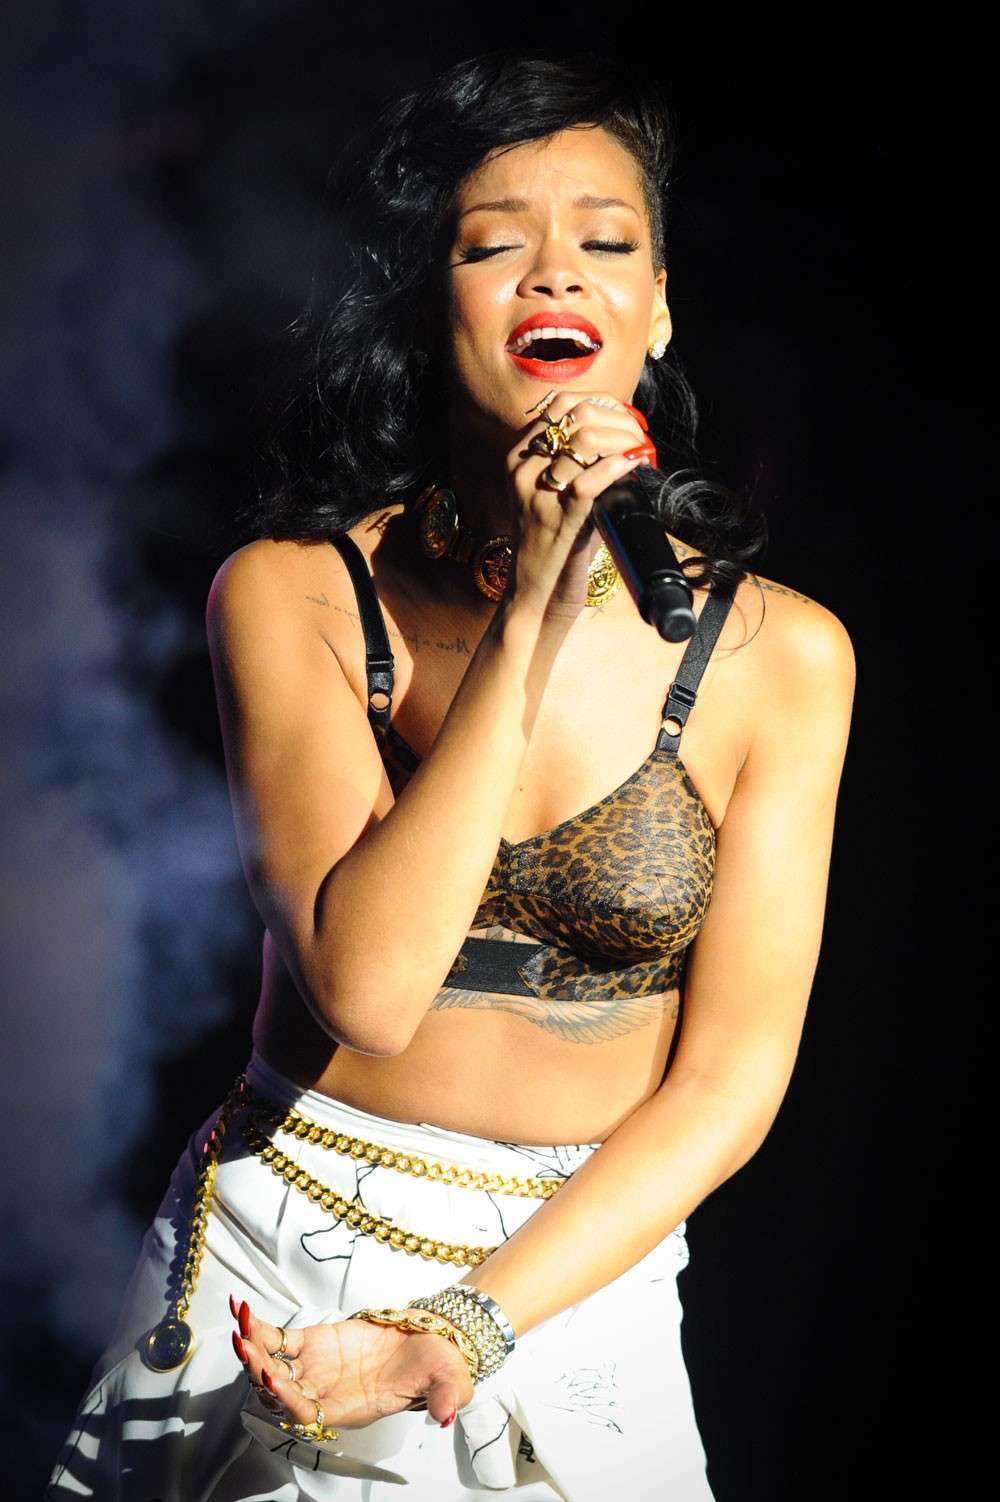 Vip dimagrite 2012: Rihanna